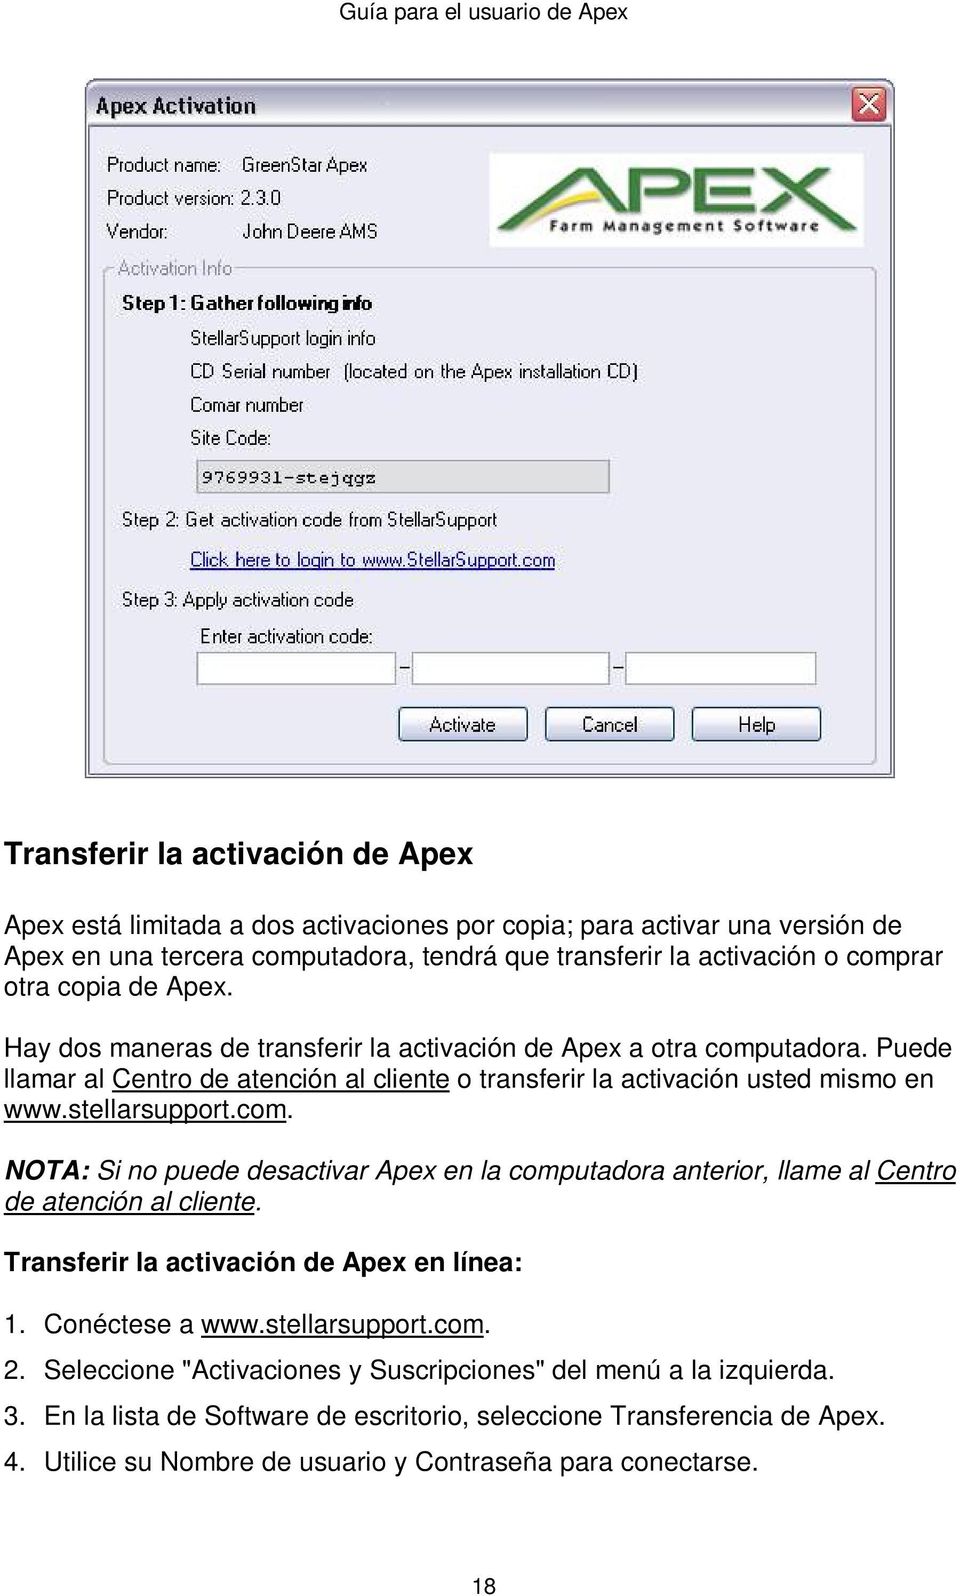 com. NOTA: Si no puede desactivar Apex en la computadora anterior, llame al Centro de atención al cliente. Transferir la activación de Apex en línea: 1. Conéctese a www.stellarsupport.com. 2.